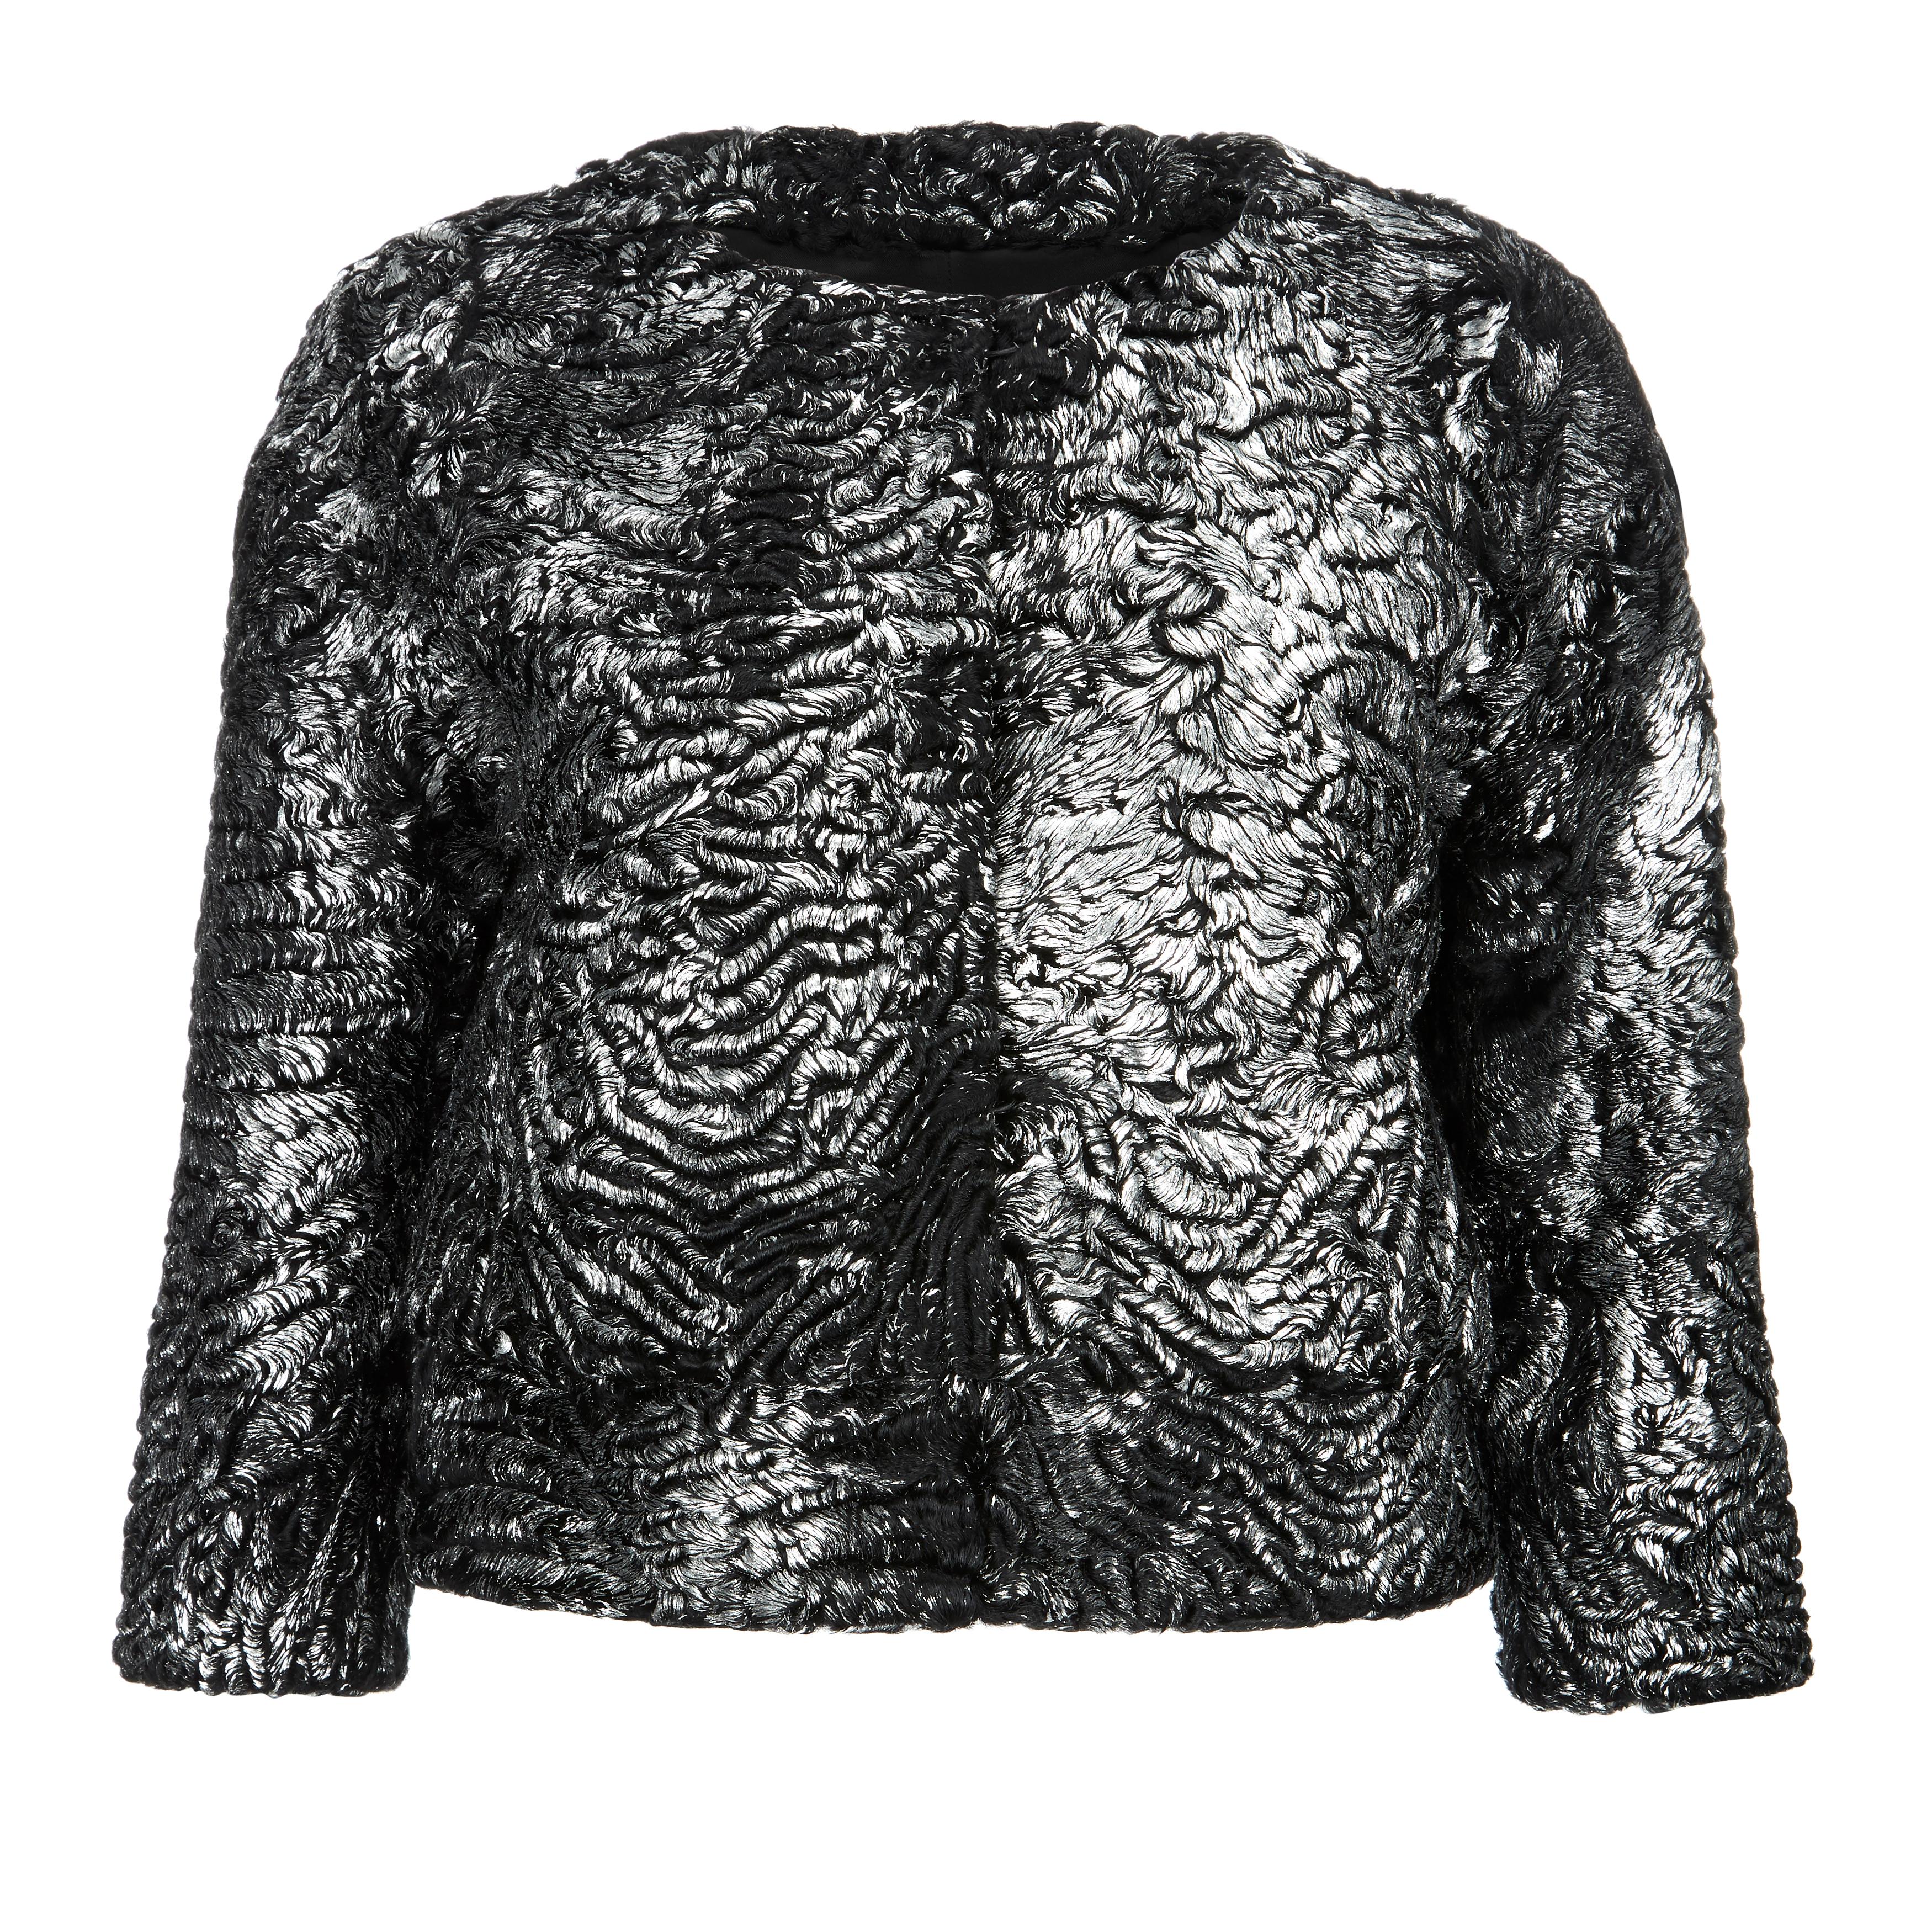 Verheyen London Cropped Jacket in Swakara Lamb Fur in Metallic Silver Size uk 8